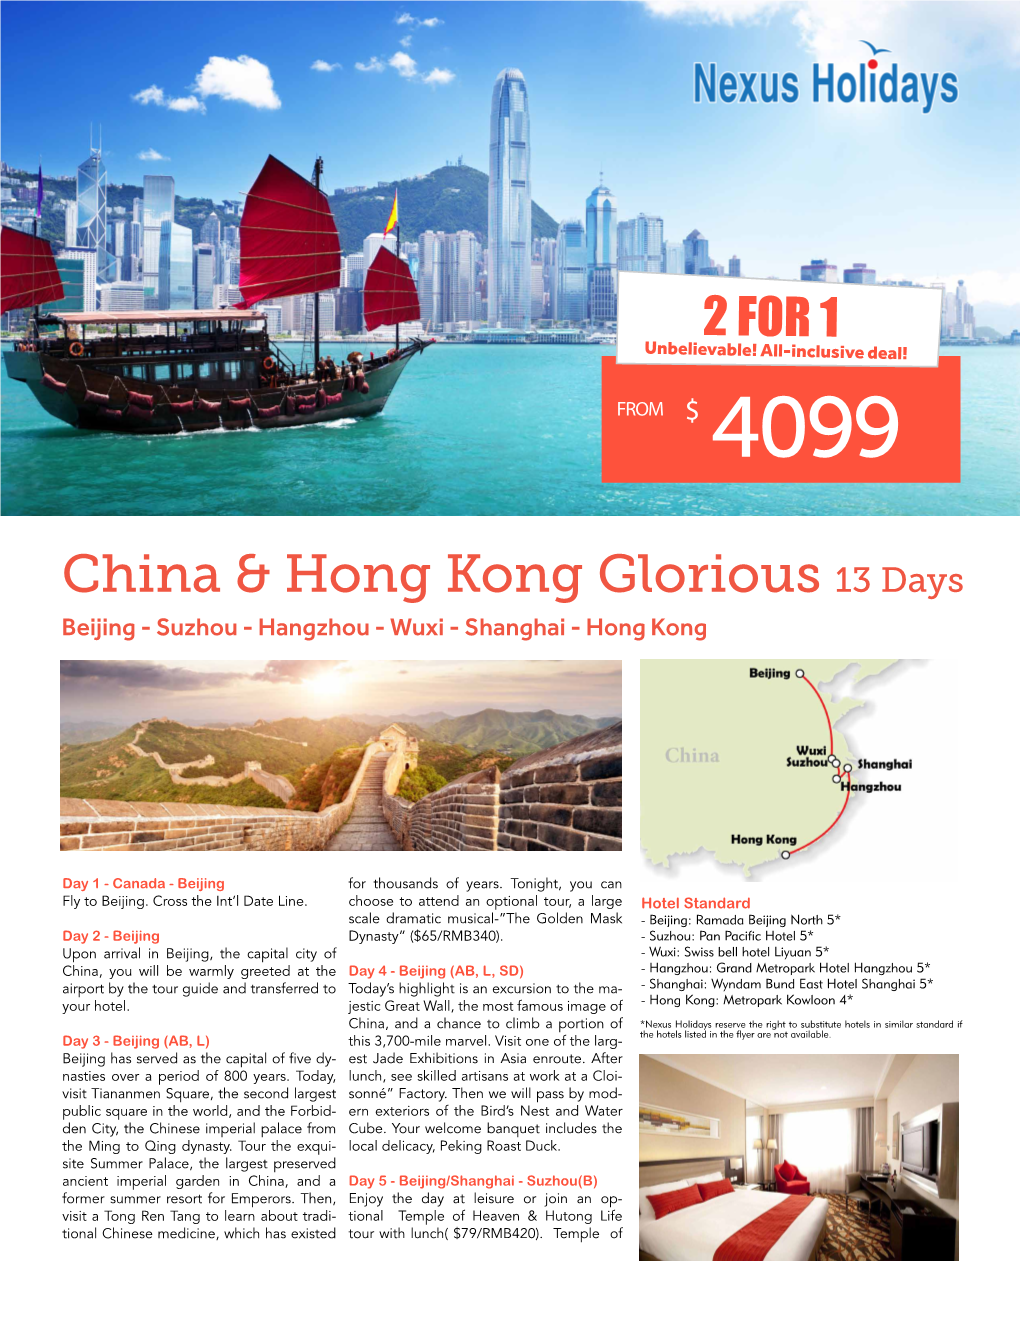 China & Hong Kong Glorious 13 Days